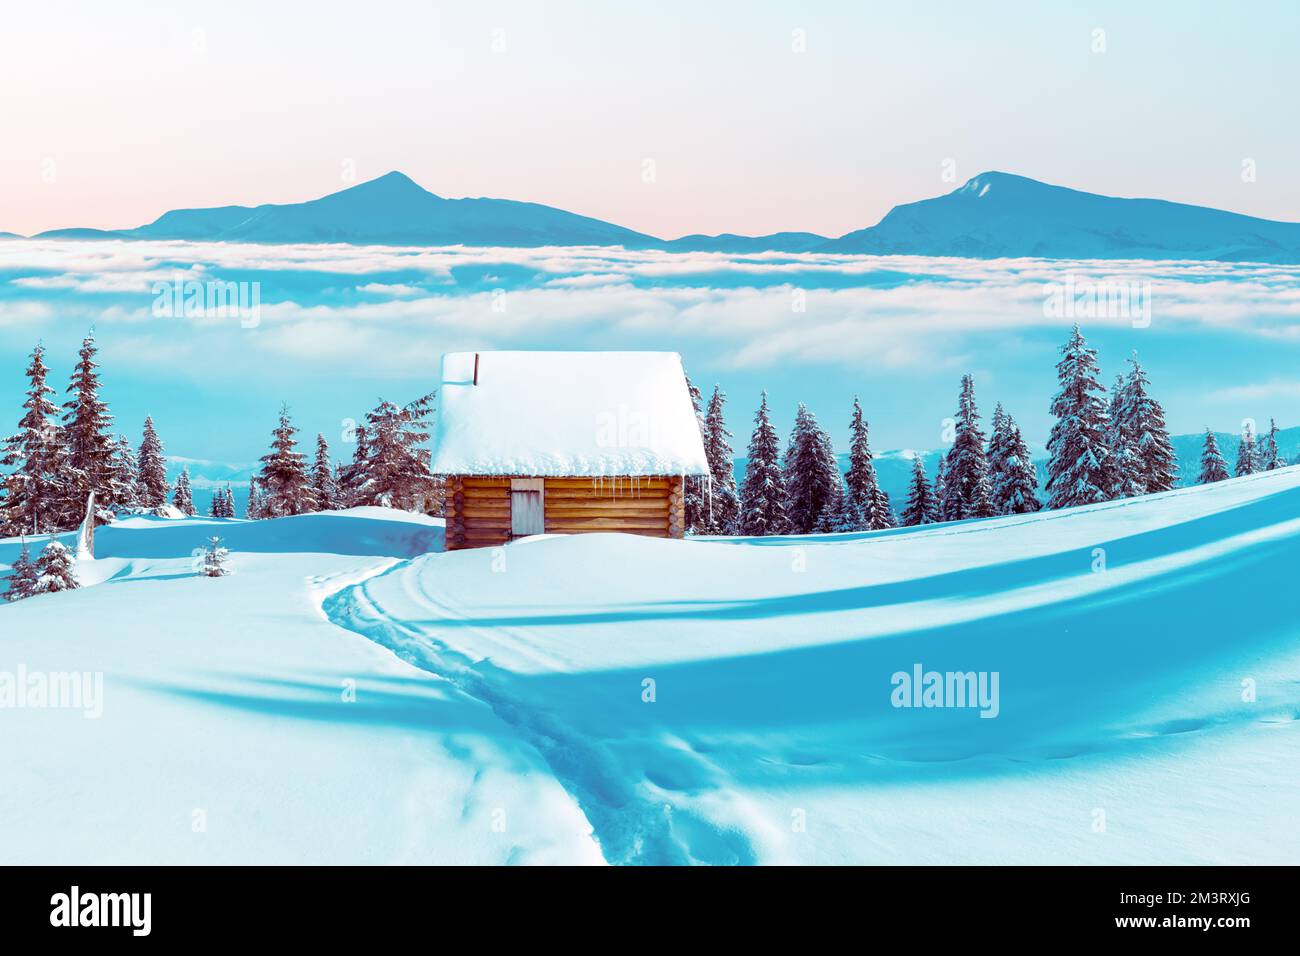 Fantastische Winterlandschaft mit Holzhaus und Berggipfeln im Nebel in schneebedeckten Bergen. Weihnachtskonzept. Karpaten Berg, Ukraine, Europa Stockfoto